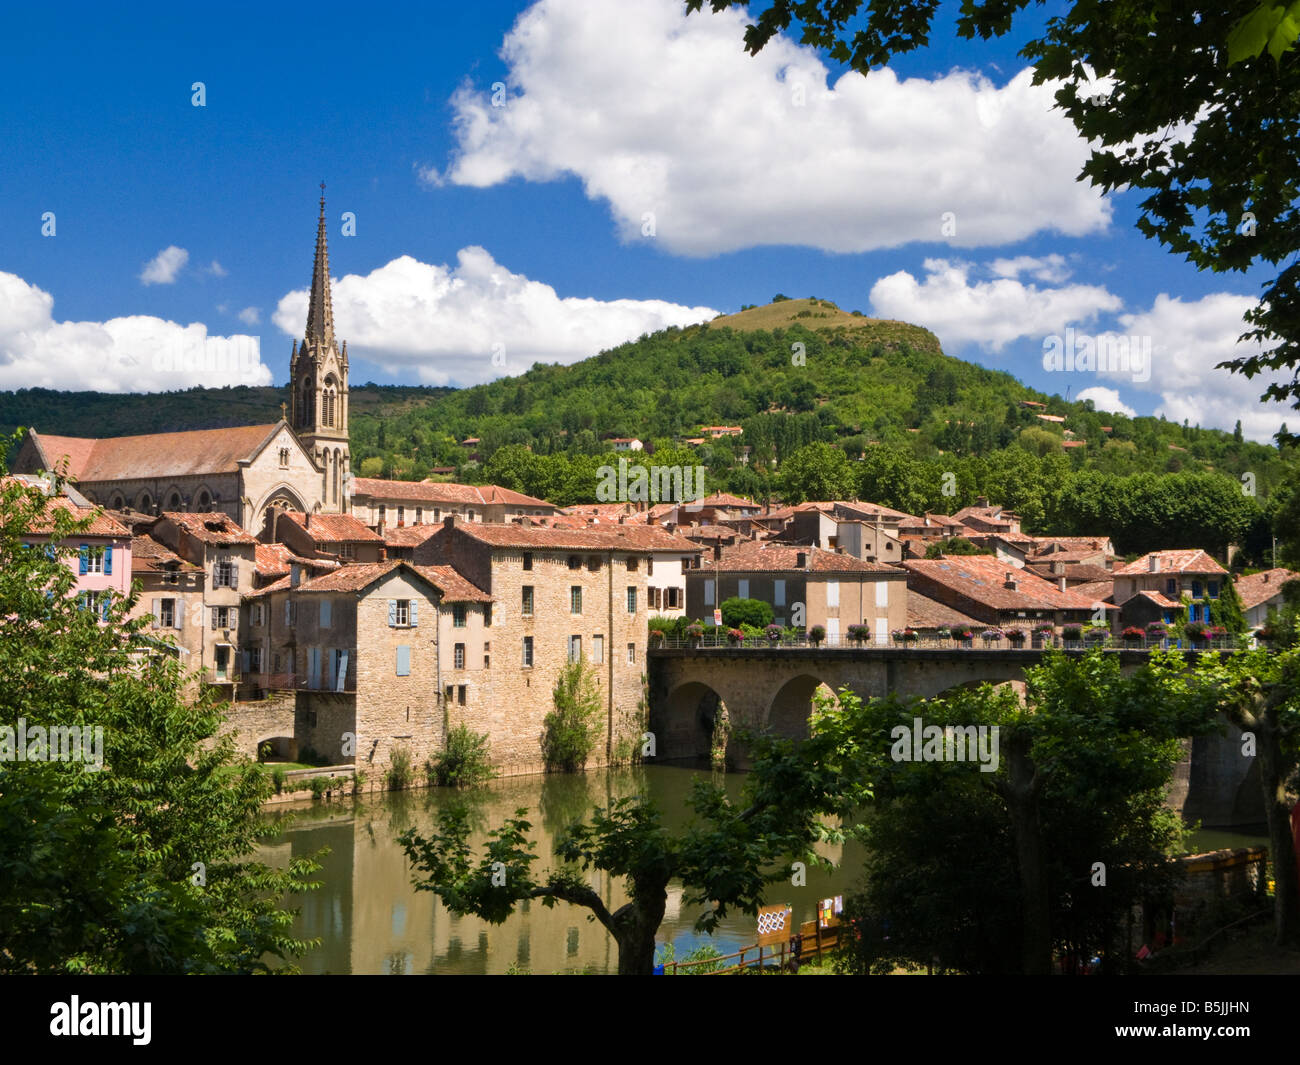 St Antonin Noble Val, Tarn et Garonne, France with the Bridge over the River Aveyron Stock Photo